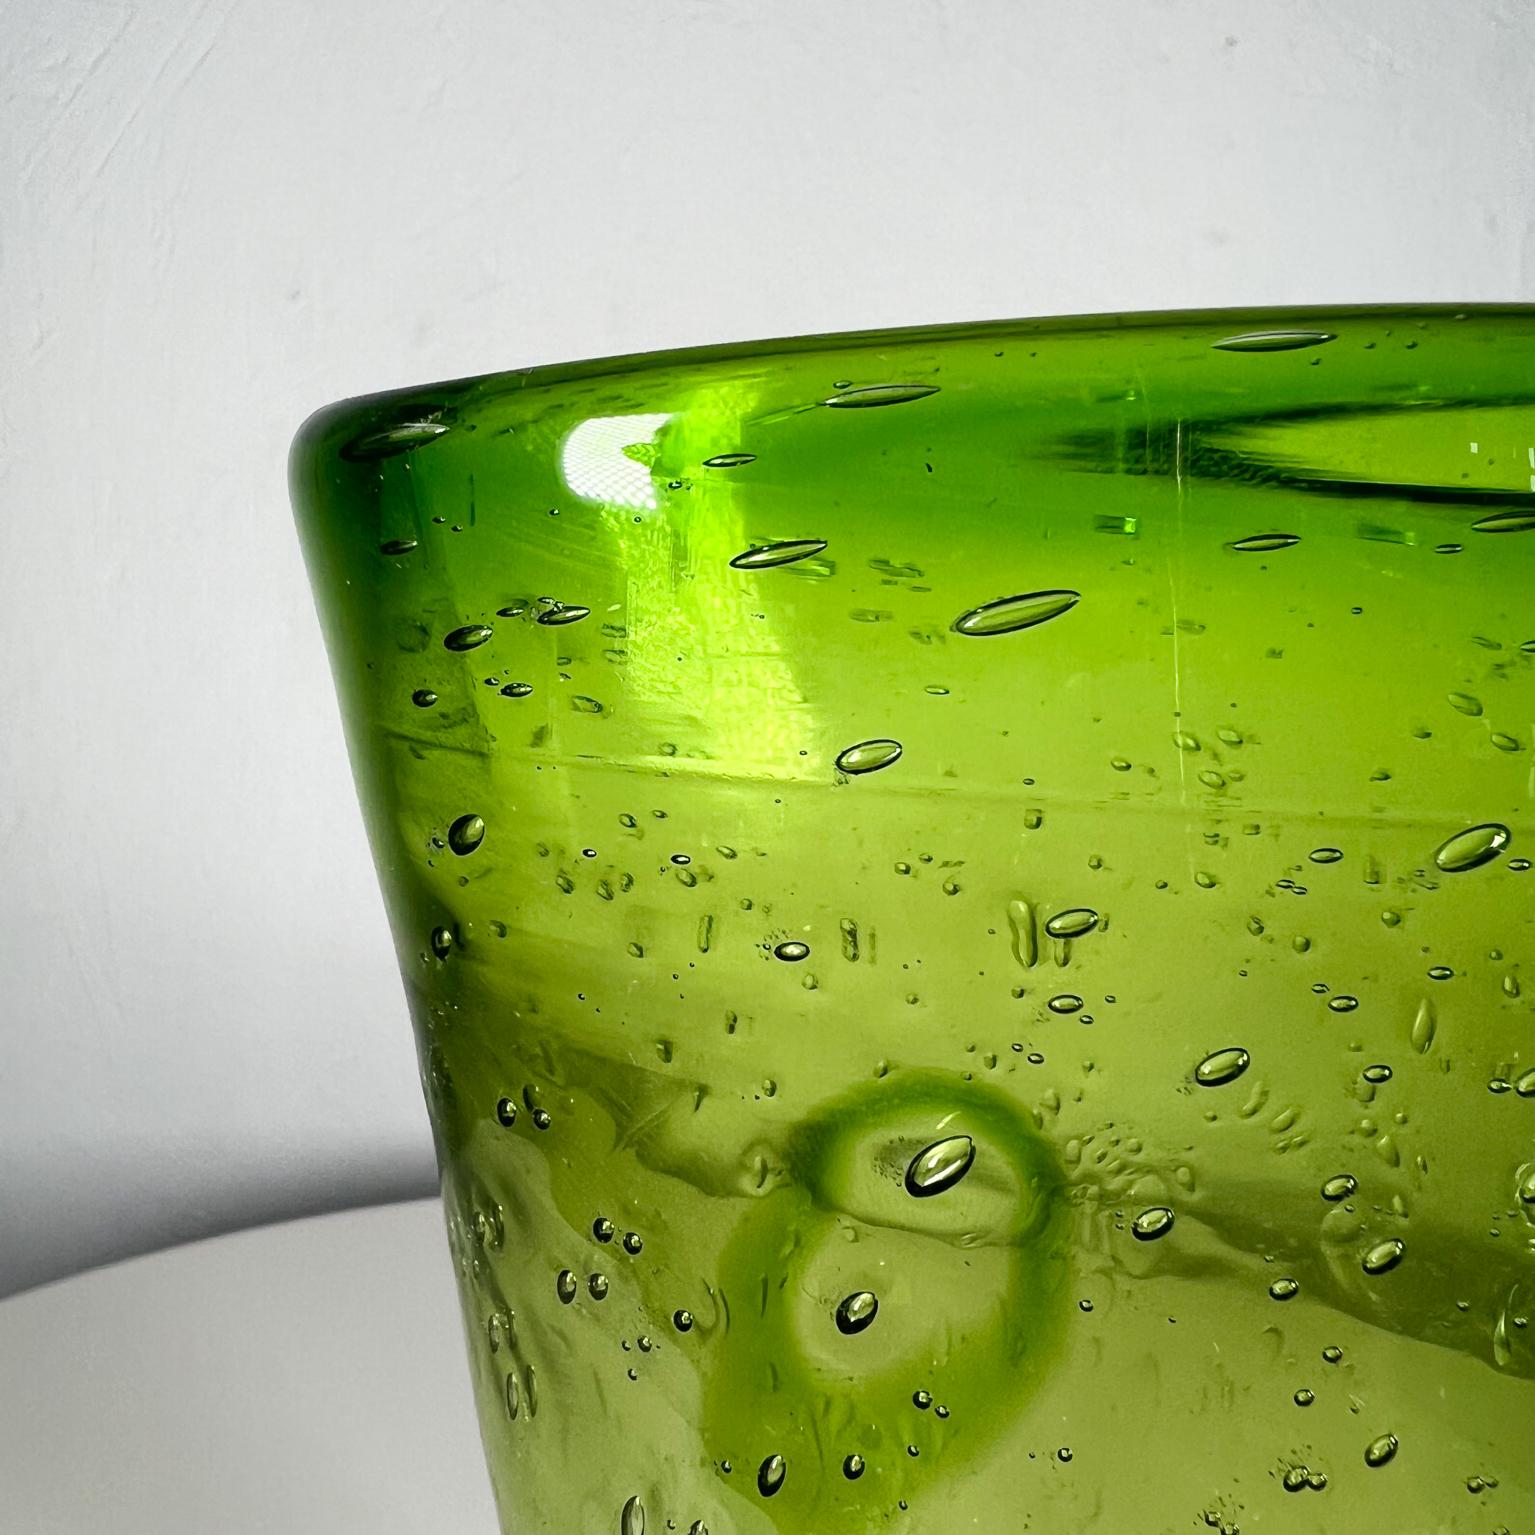 Kunstglas Kontrollierte Blase Grün Modern Murano Vase
9,38 hoch x 6,13 b x 3,63 t
Unmarkiert
Preowned Vintage Zustand, siehe Bilder.